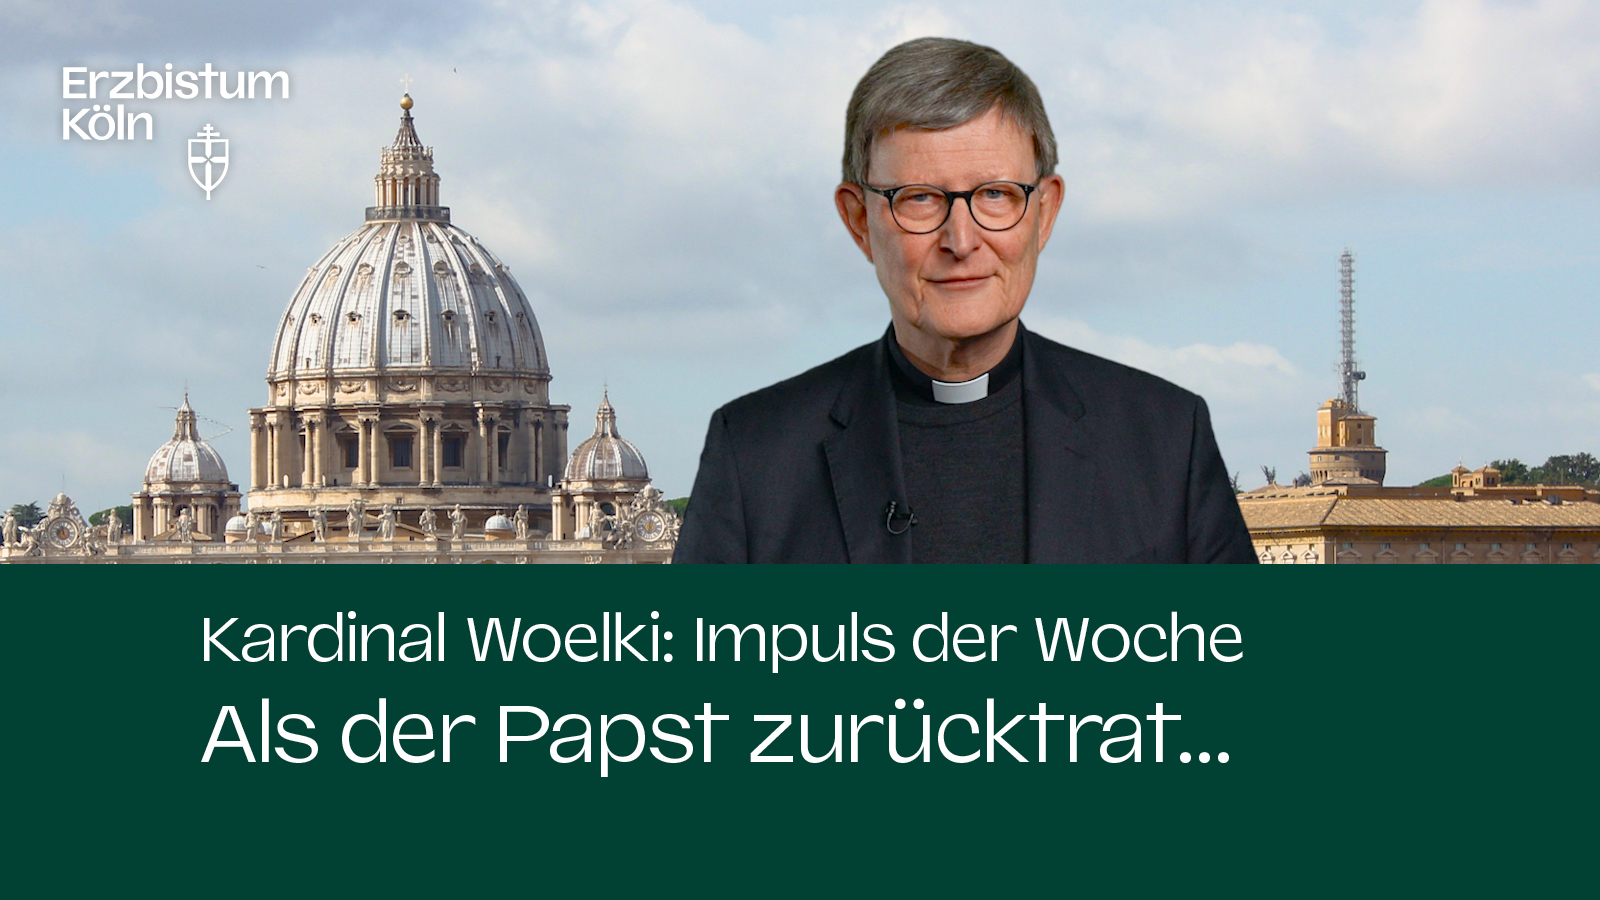 Kardinal Woelki: Impuls der Woche - Als der Papst zurücktrat